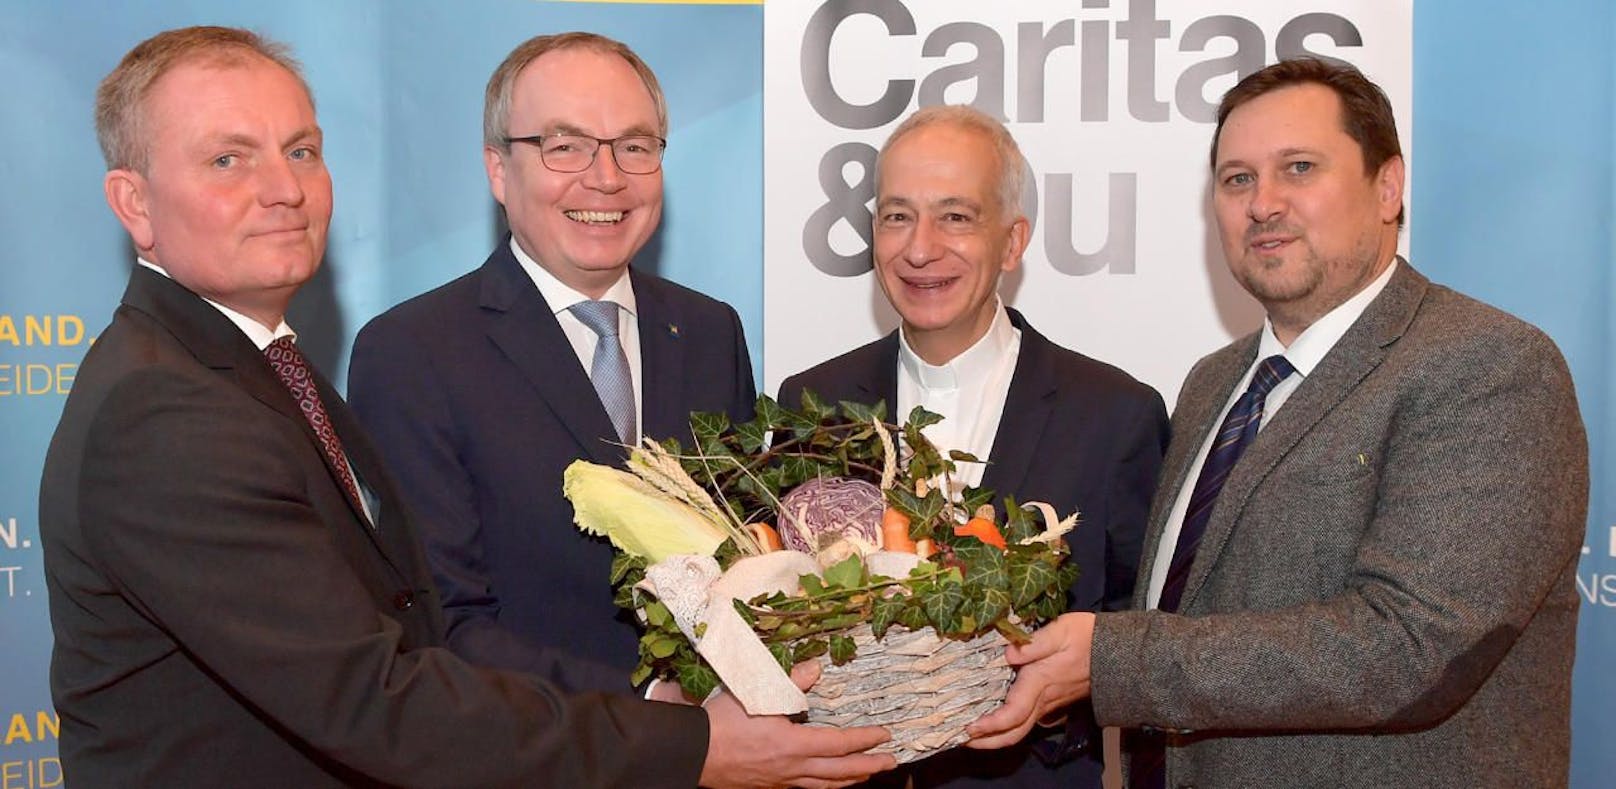 Karl Auer, Stephan Pernkopf, Michael Landau und Hannes Ziselsberger von der Caritas St. Pölten